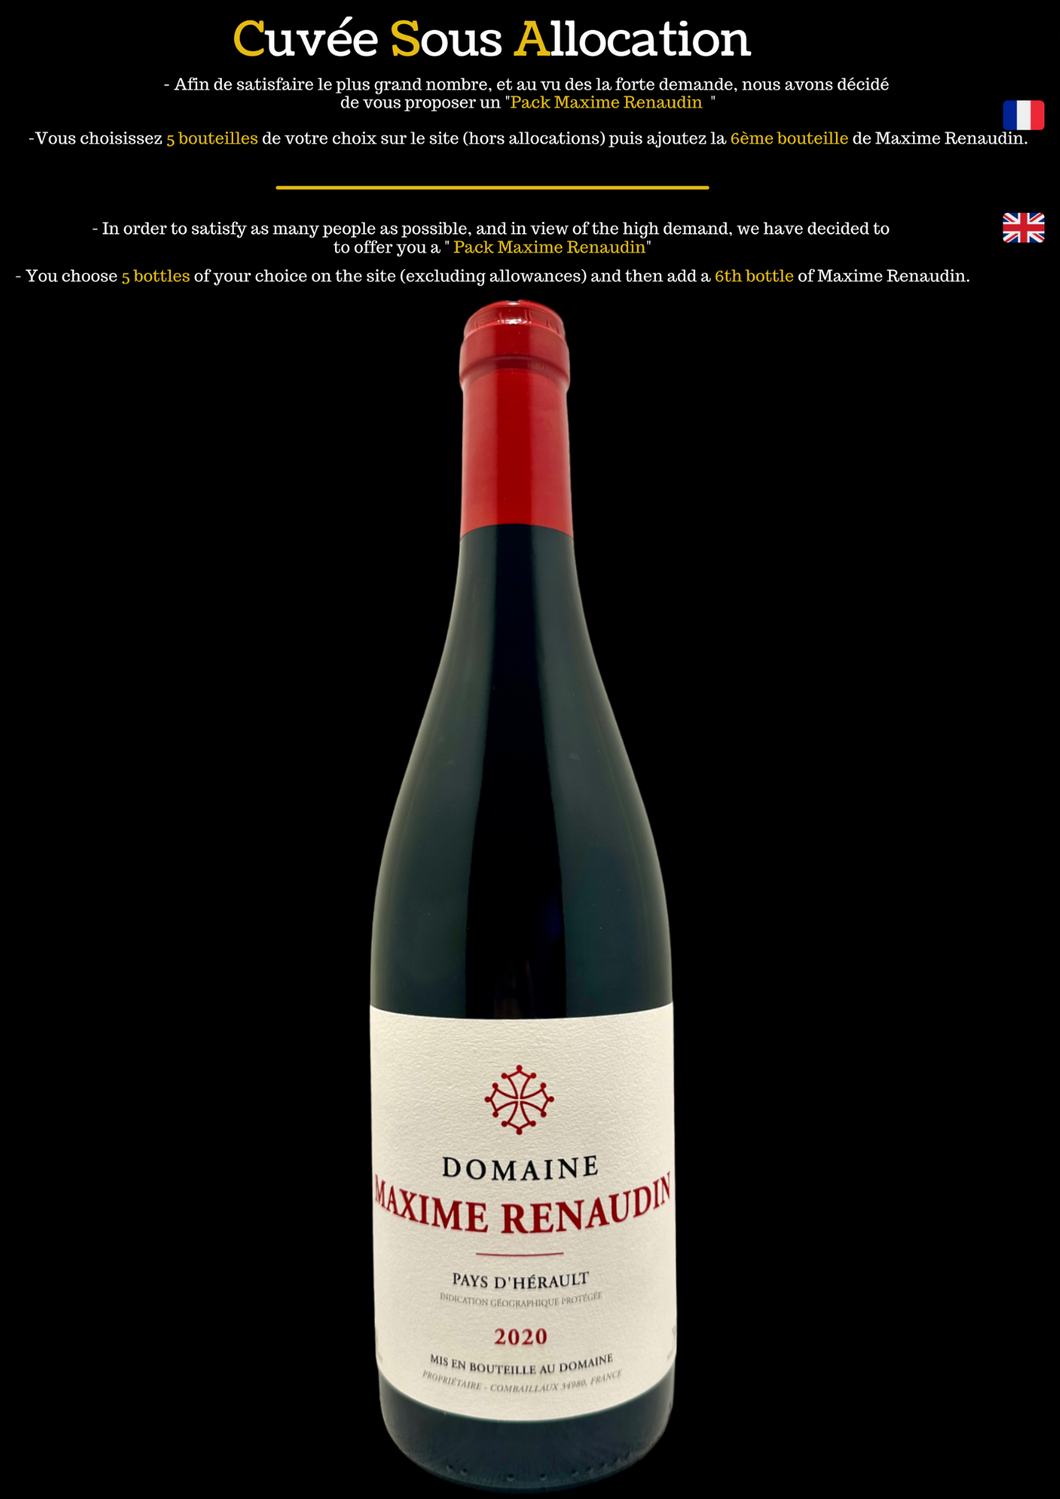 Vin du languedoc roussillon bio biodynamie organic natural wine laurent vallé la grange des pères Pays d'Hérault Maxime Renaudin 